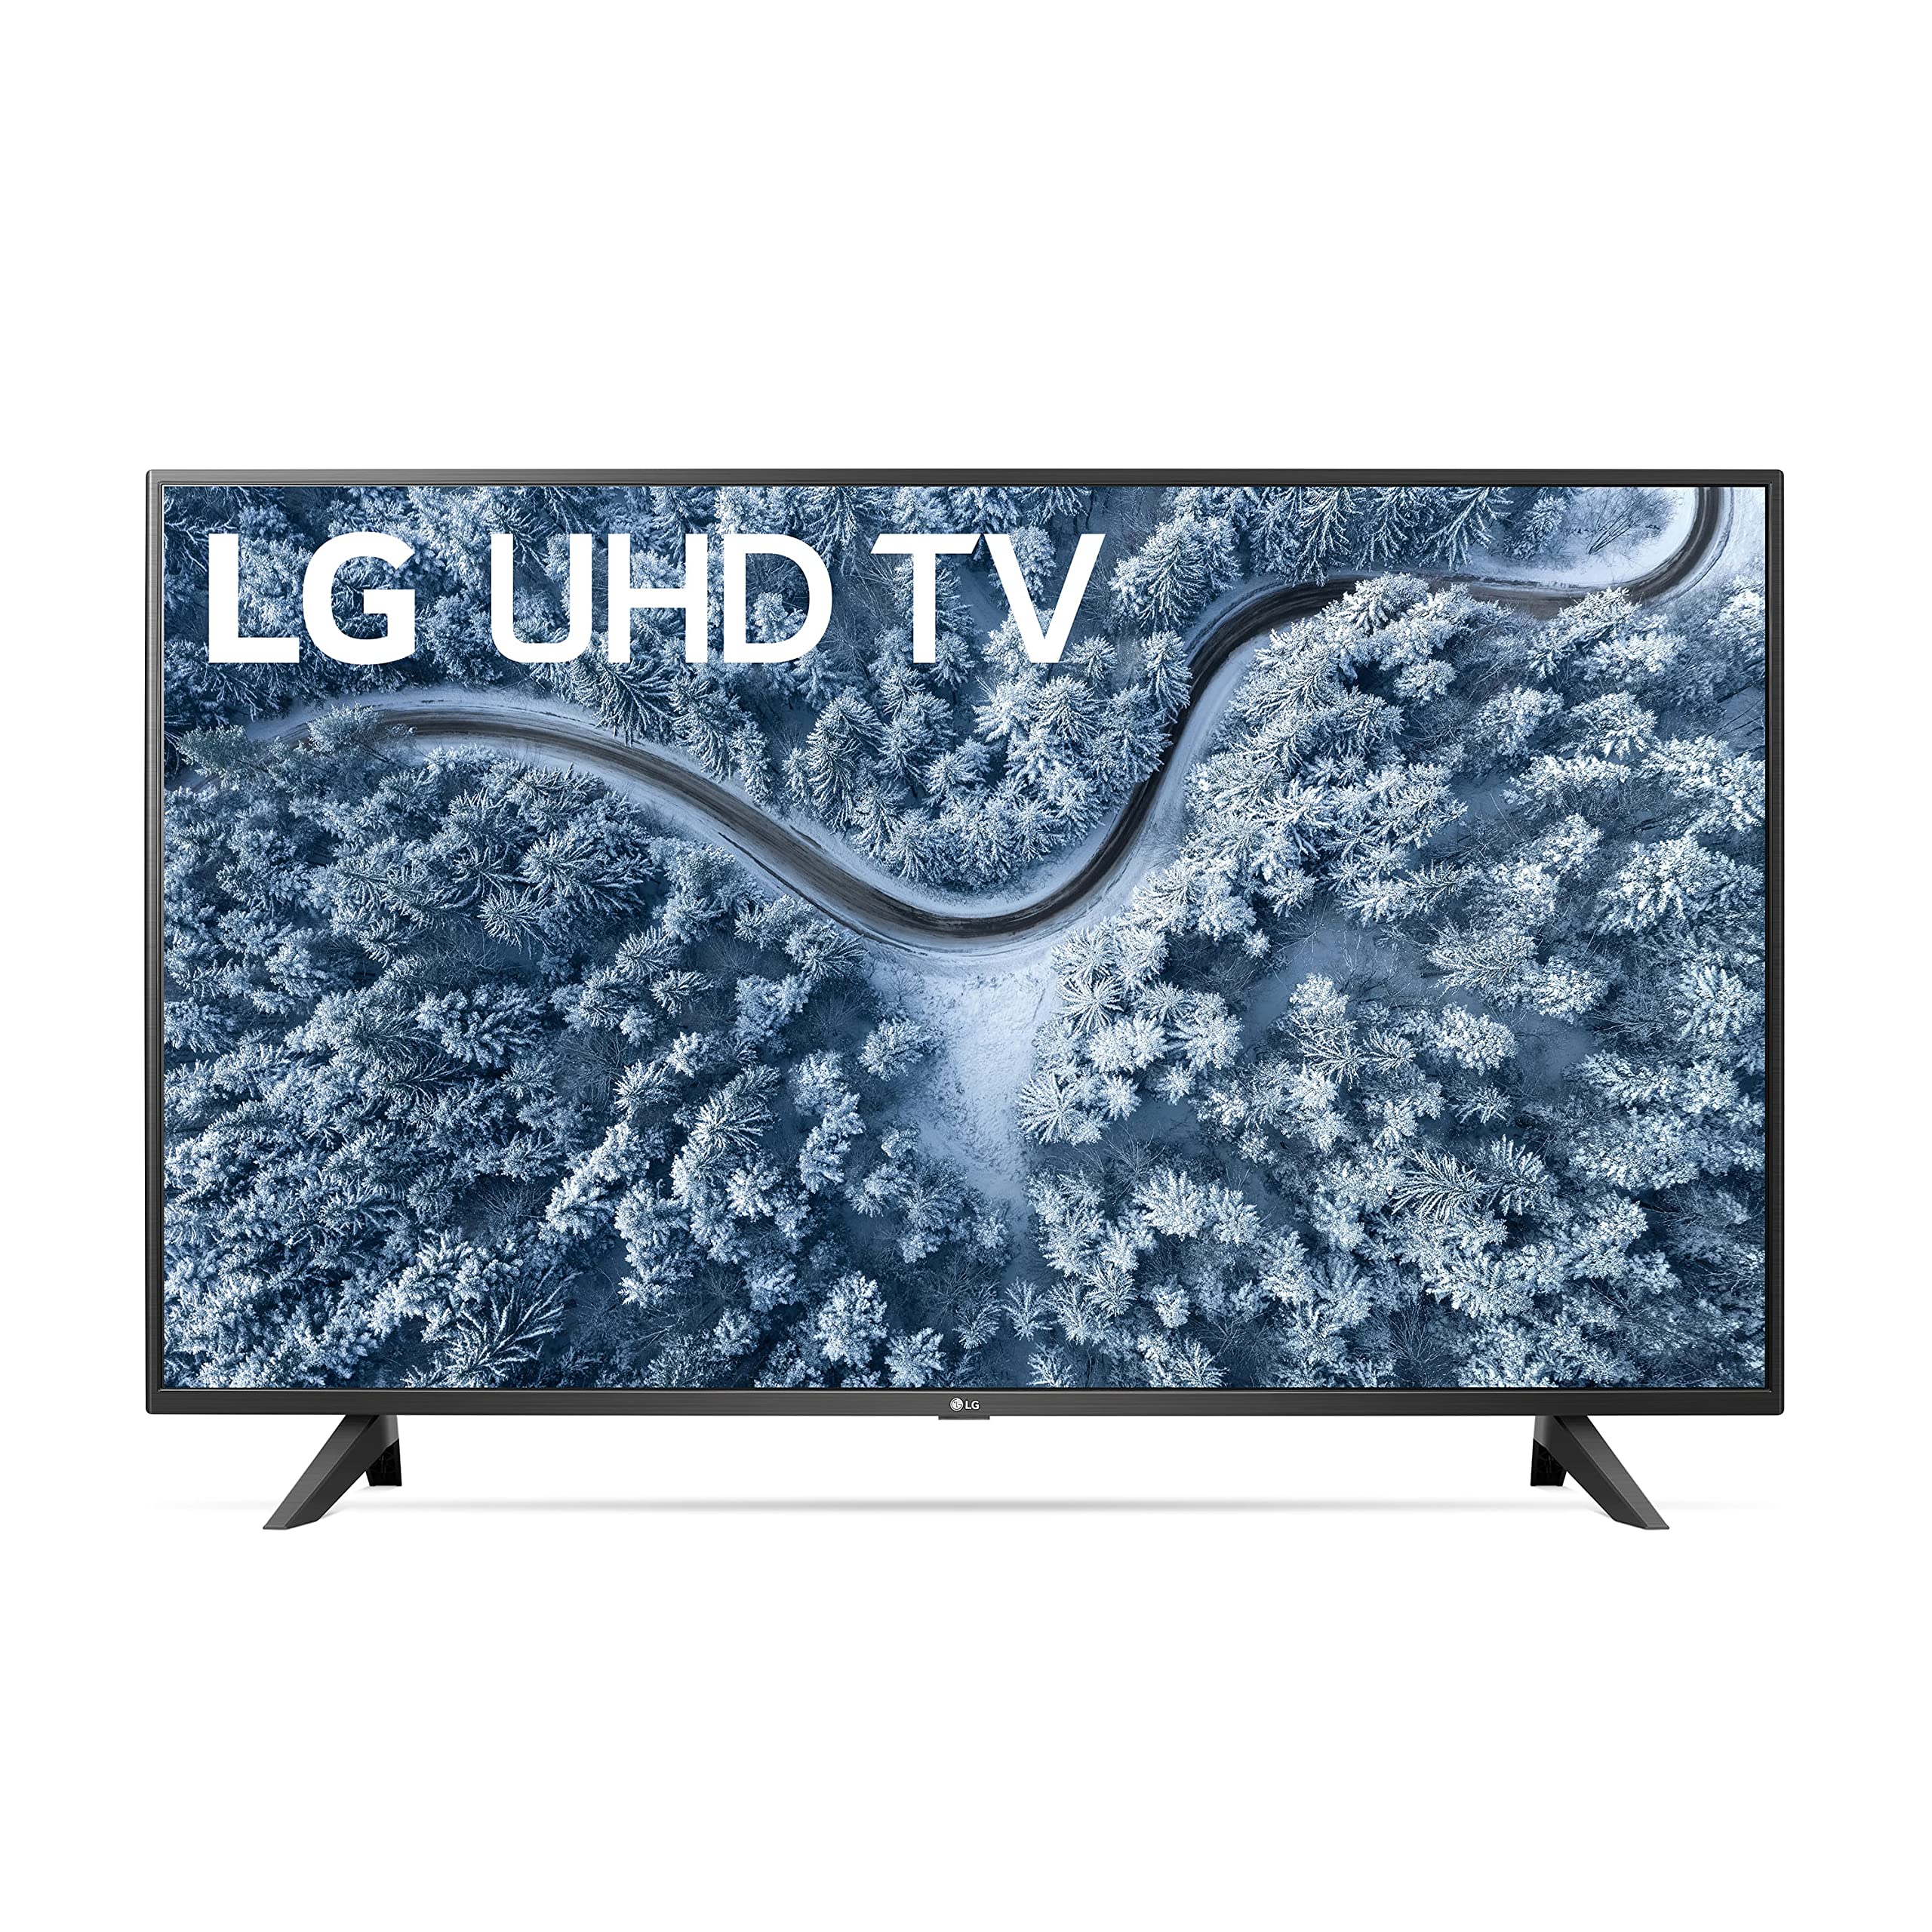 LG Смарт-телевизор 50UP7000PUA серии UP7000 со светодиодной подсветкой 4K UHD и webOS с диагональю 50 дюймов